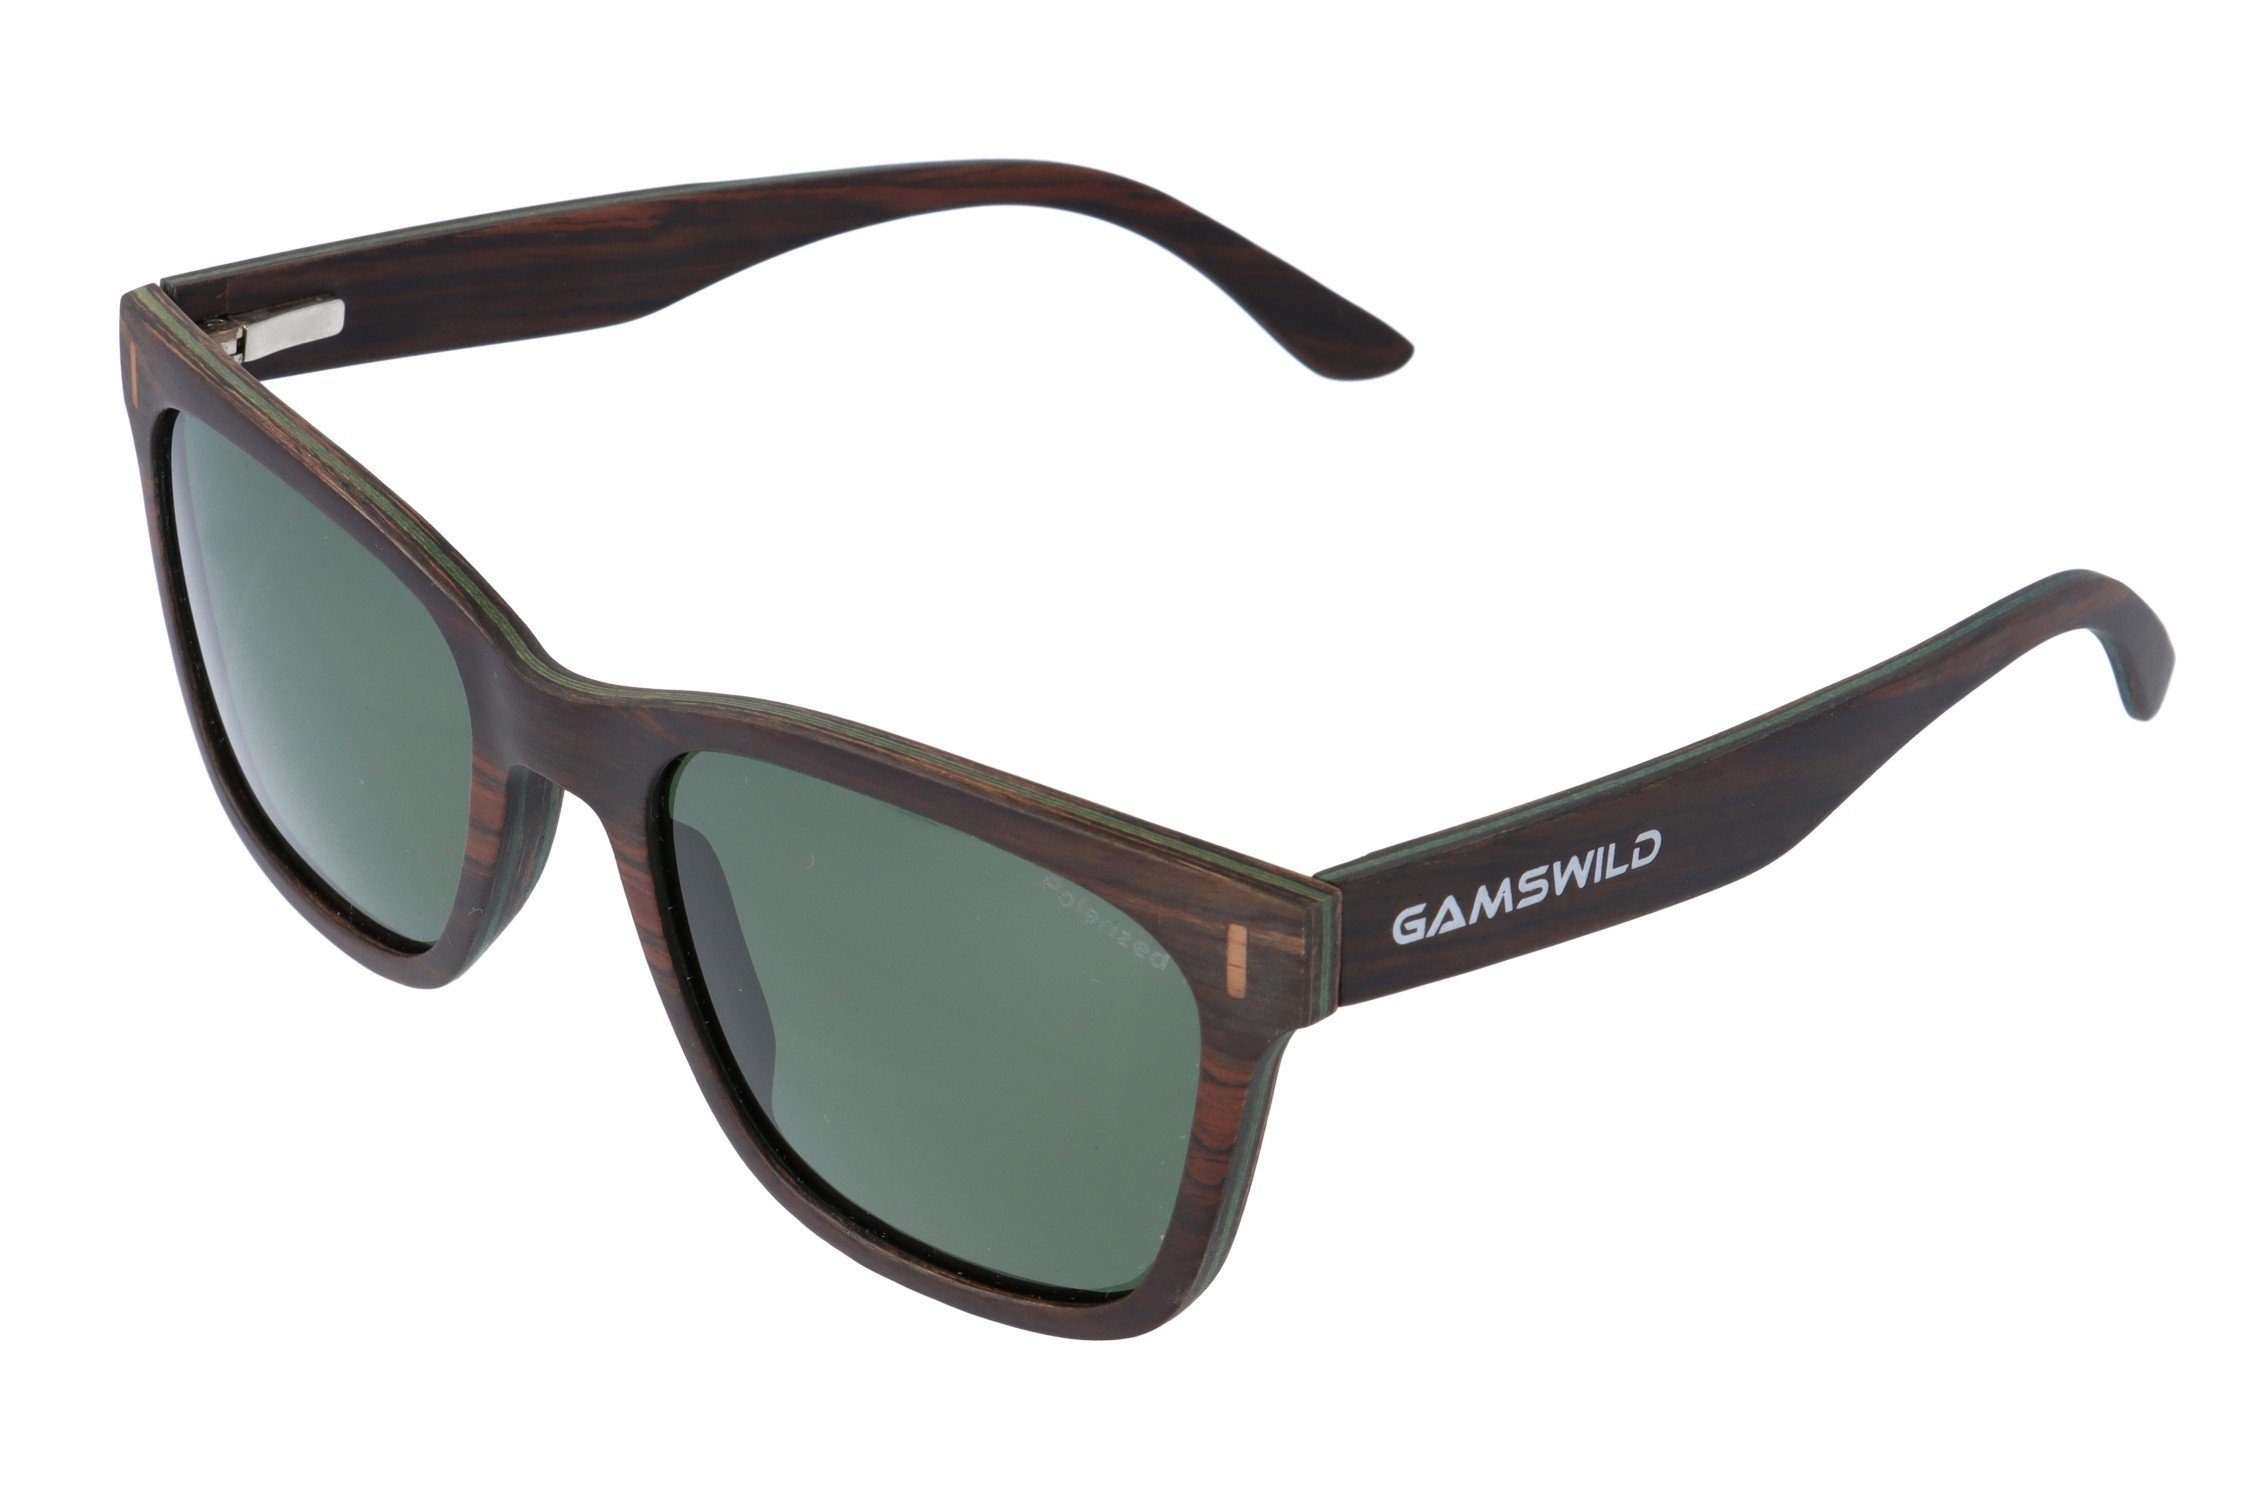 Gamswild Sonnenbrille WM0011 GAMSSTYLE Holzbrille Damen Herren Unisex, polarisierte Gläser in braun, grau, blau & G15 Glas G15